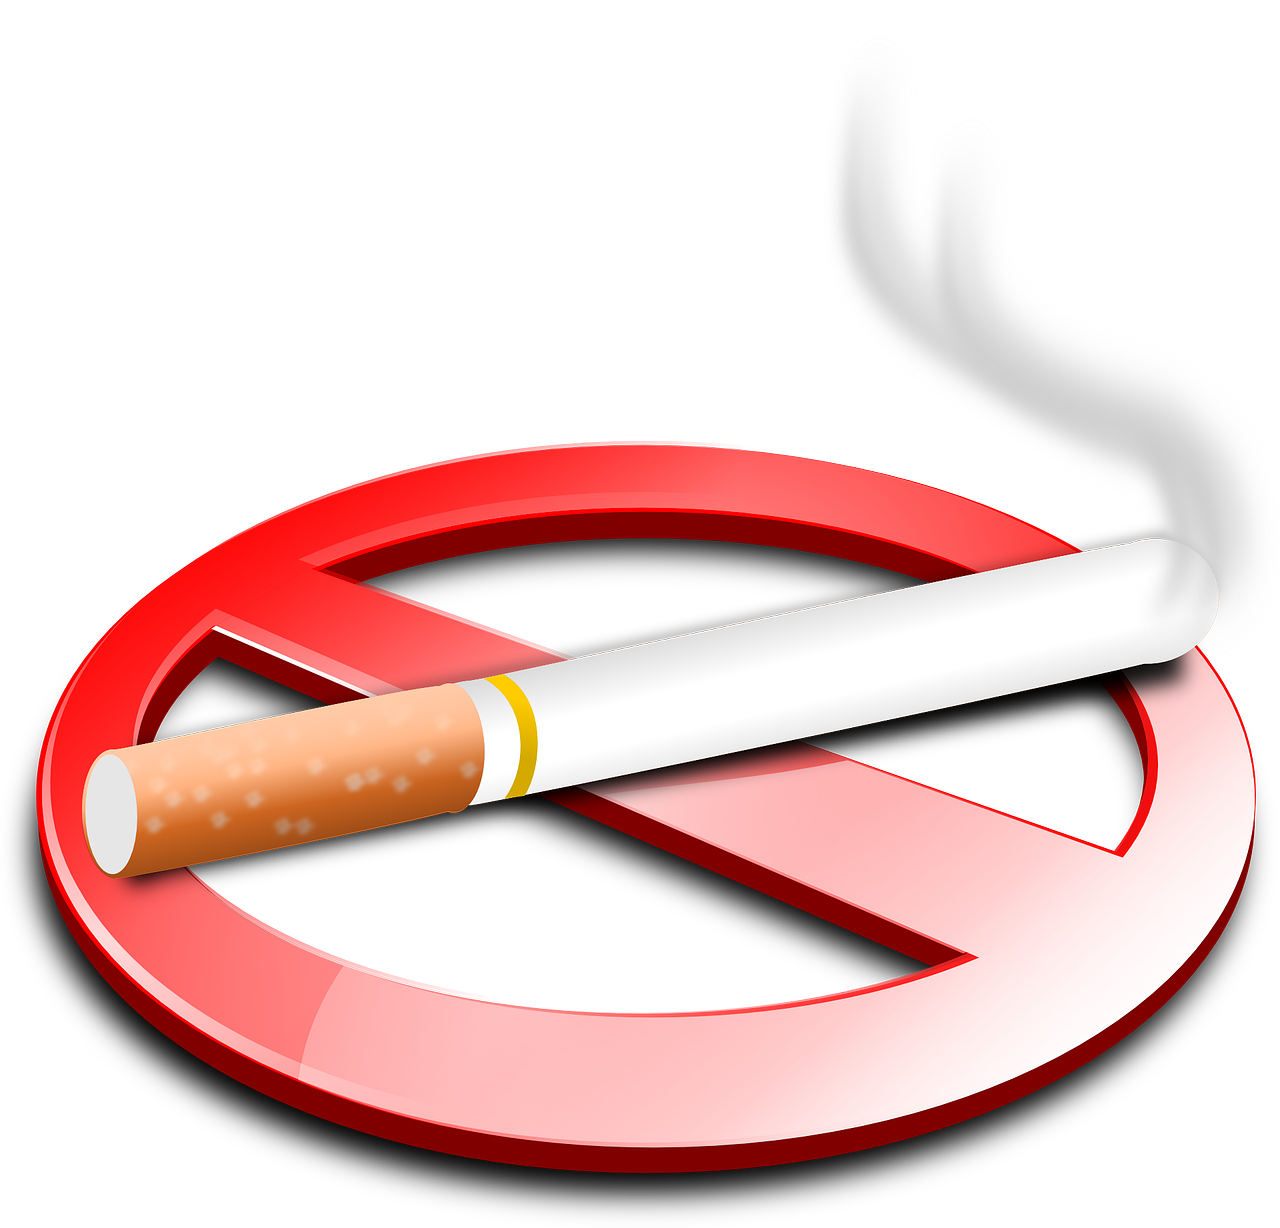 Rūkymas, Cigarečių, Nerūkantis, Uždrausta, Draudžiama, Draudžiama, Nikotinas, Ciggy, Dūmai, Nesveika